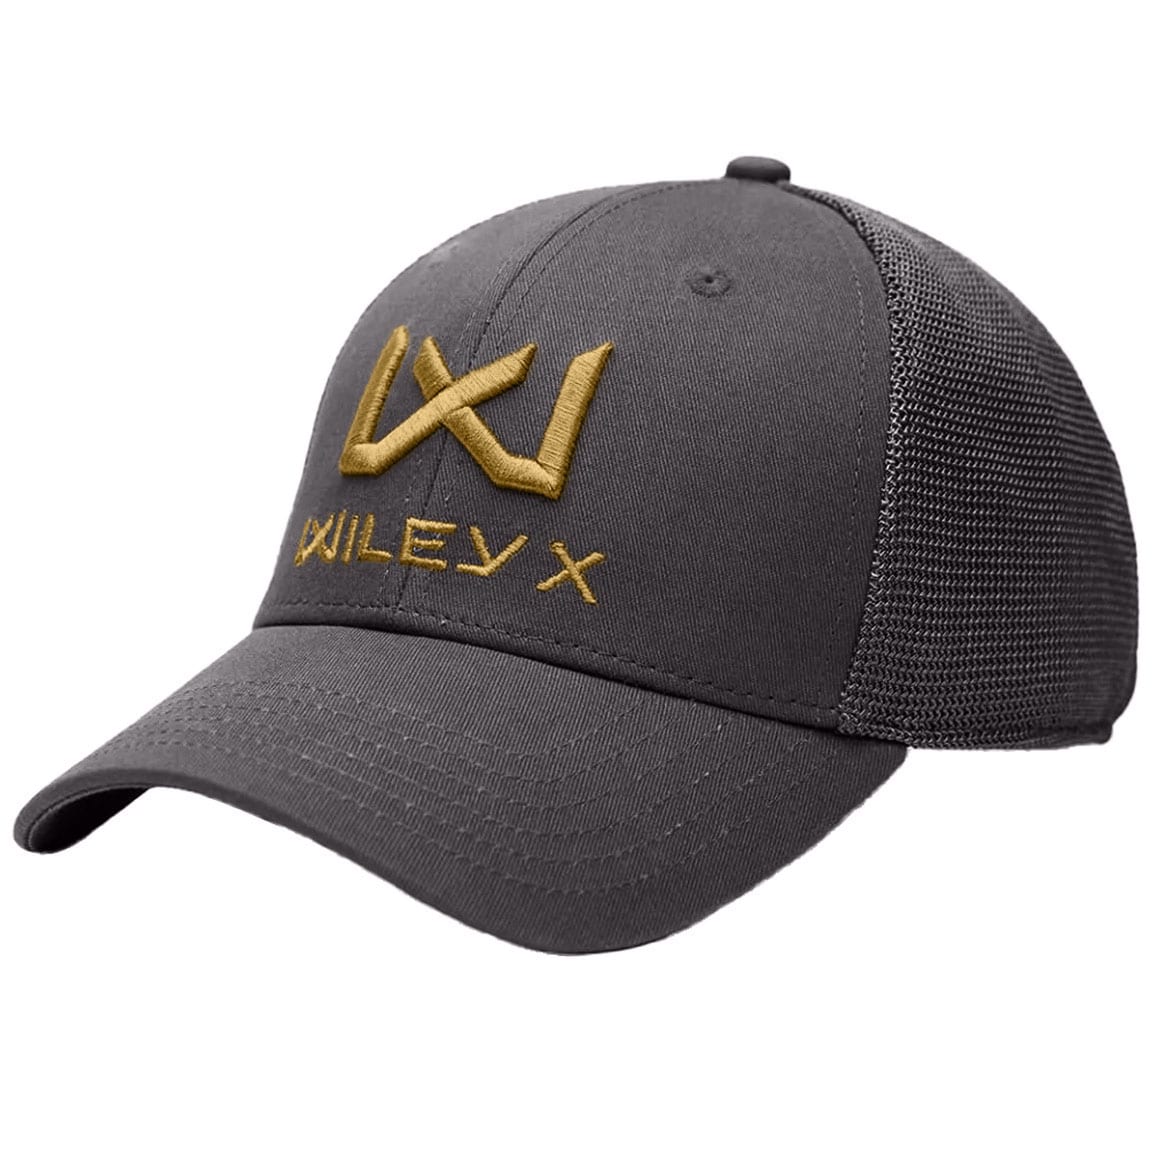 Czapka z daszkiem Wiley X Trucker Cap - Dark Grey/Tan WX